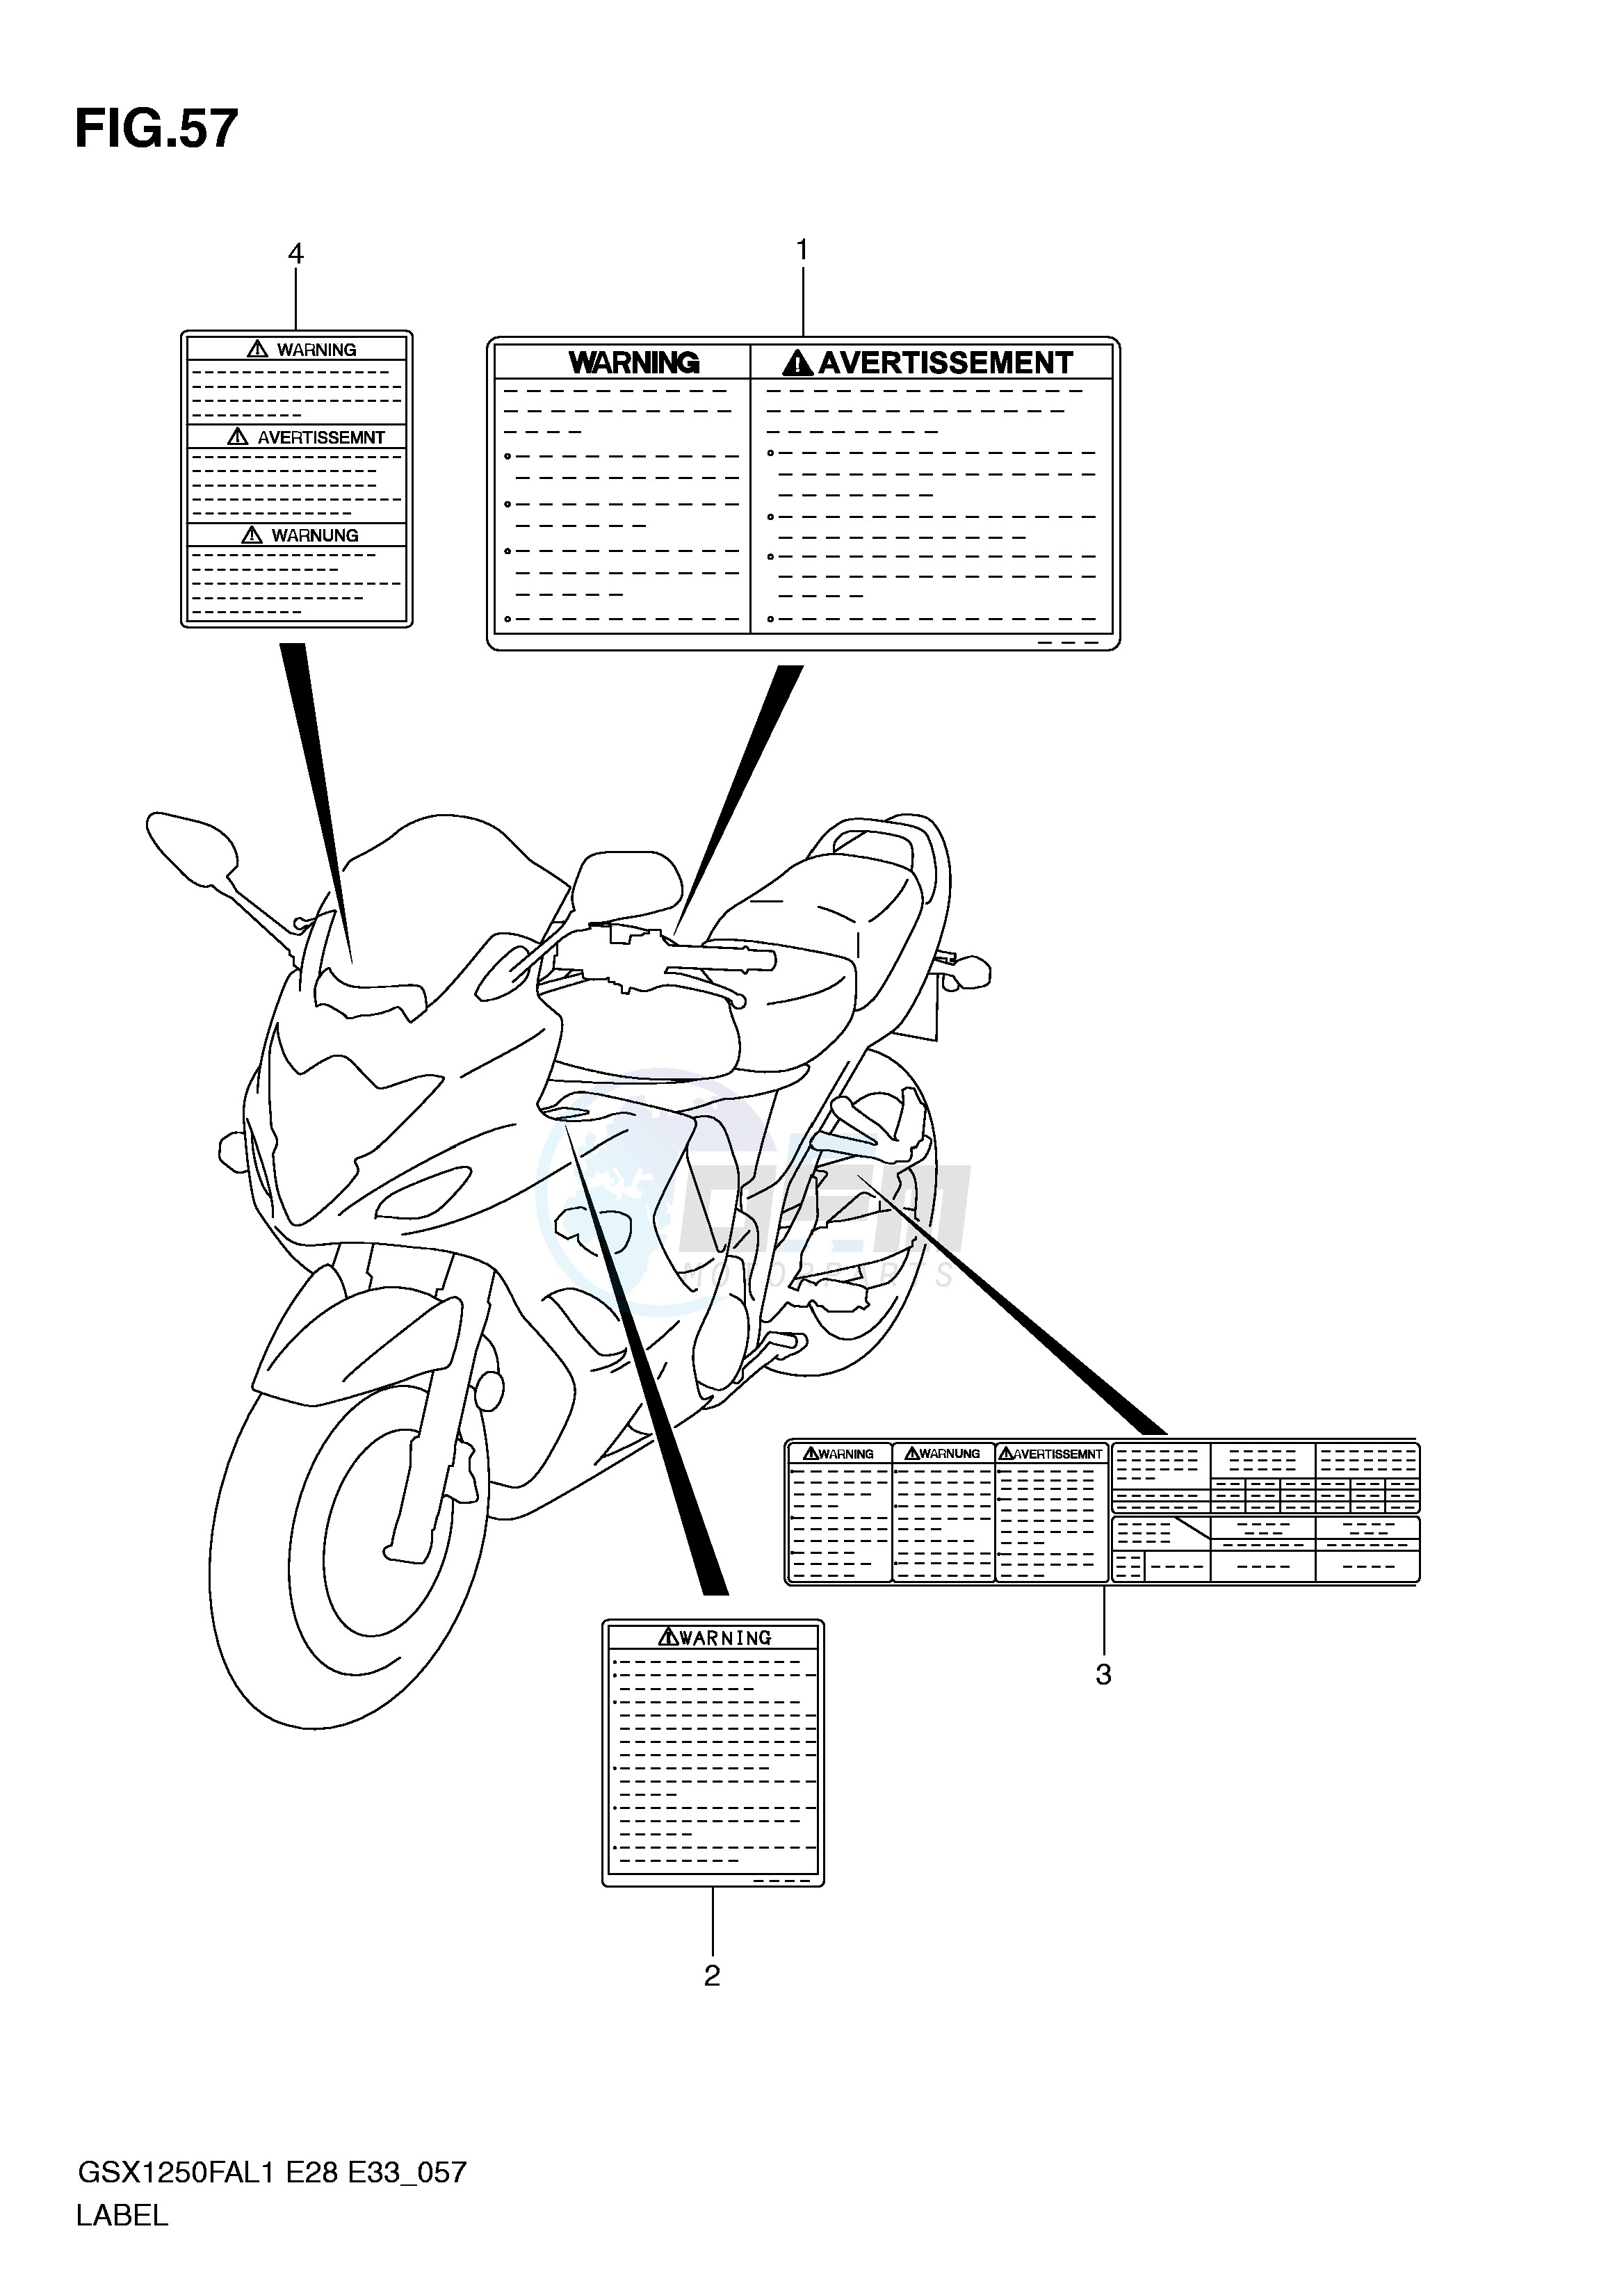 LABEL (GSX1250FAL1 E28) blueprint